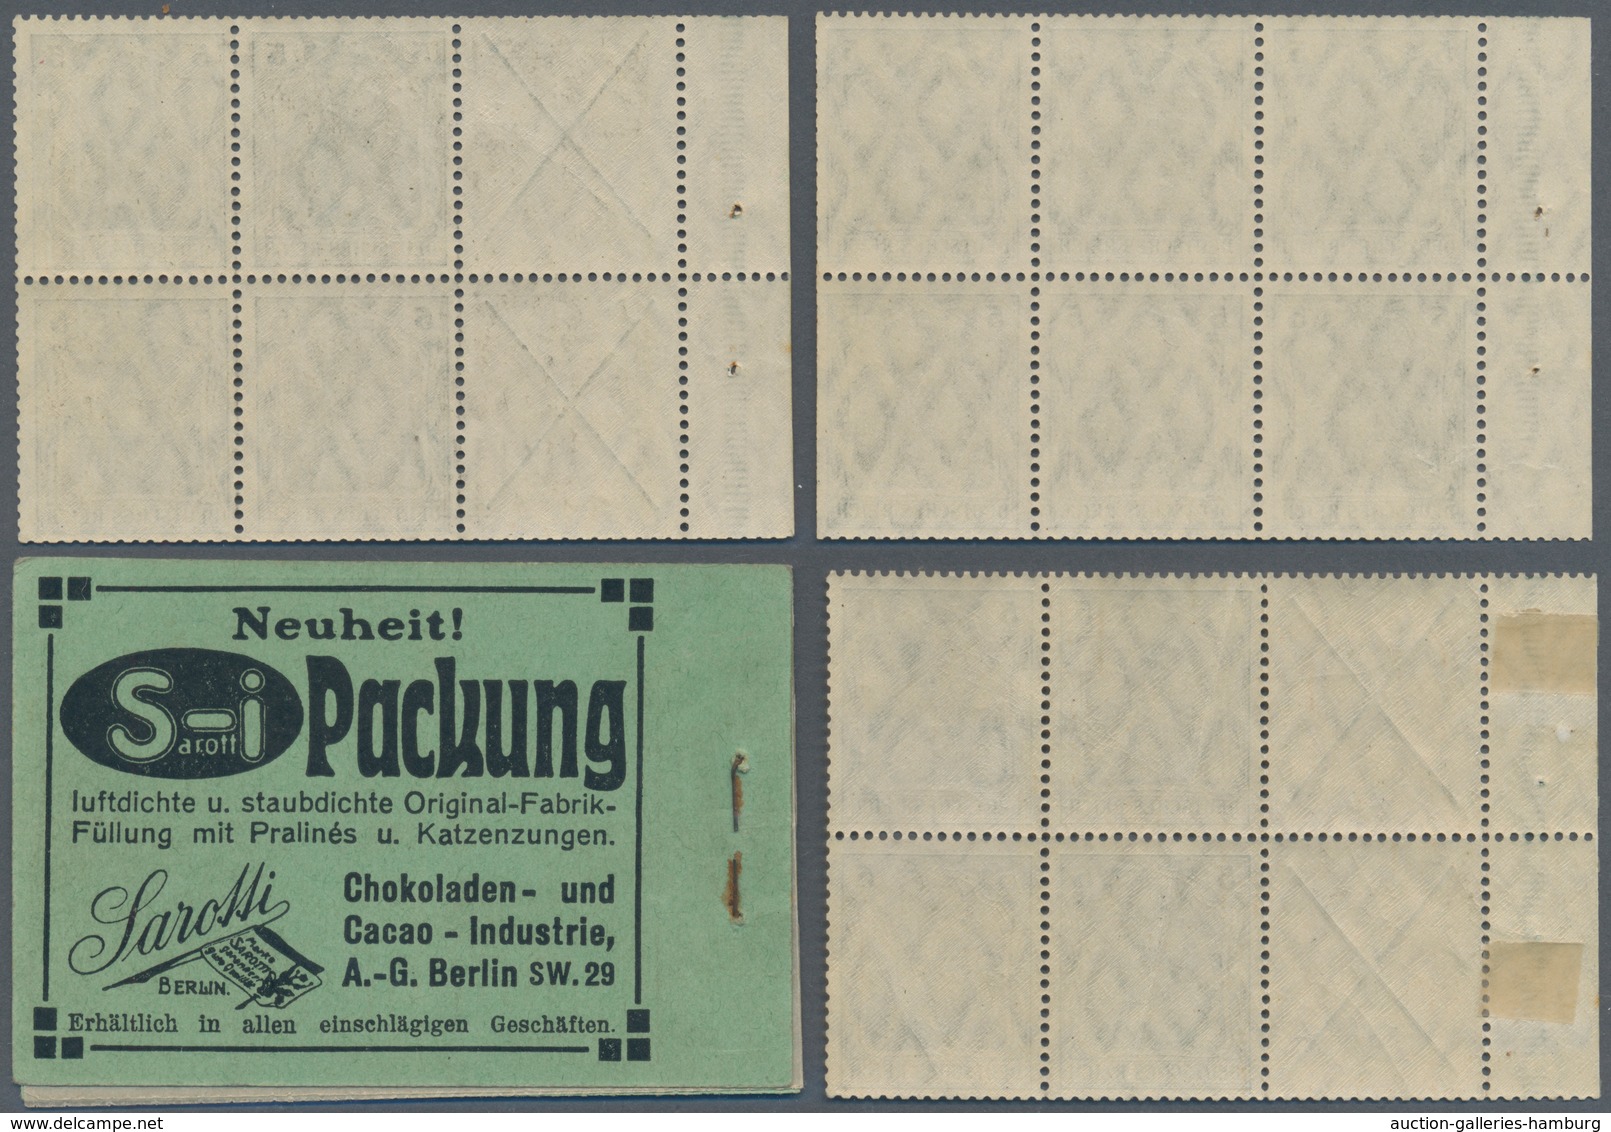 Deutsches Reich - Markenheftchenblätter: 1910, Germania-Markenheftchen 2 Mark, Lot Von Drei Heftchen - Booklets